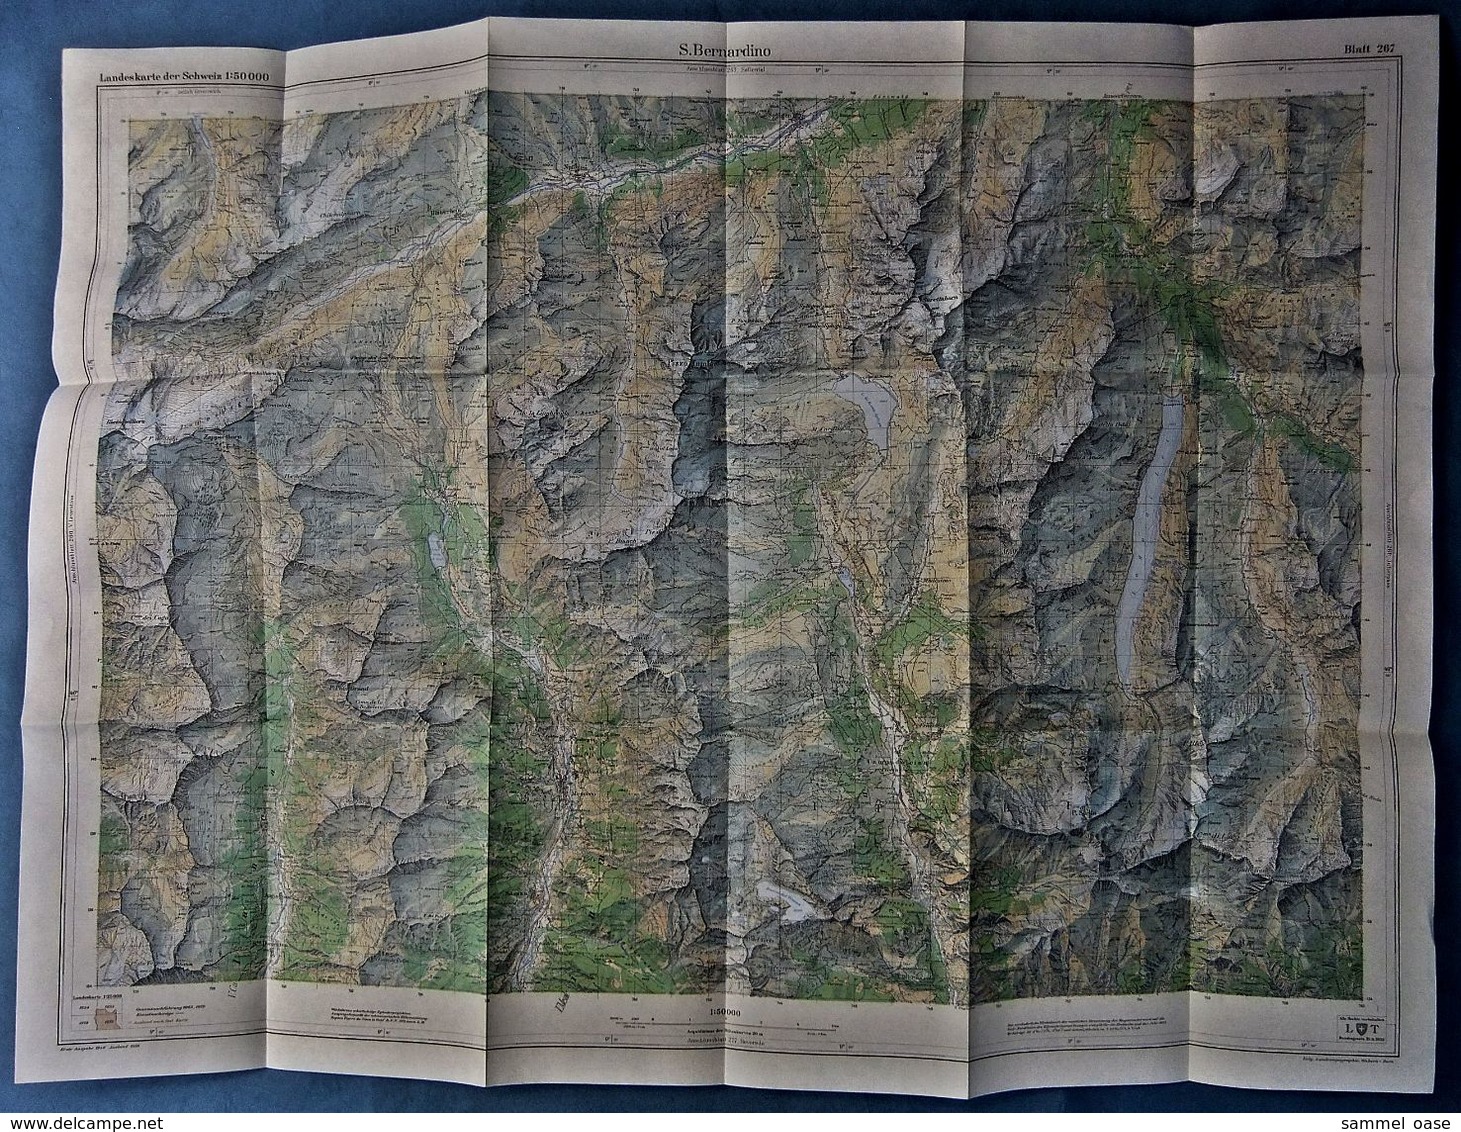 Topographische Karte / Landeskarte Schweiz  -  S. Bernardino 267  - 1:50 000  -  1970 - Wereldkaarten